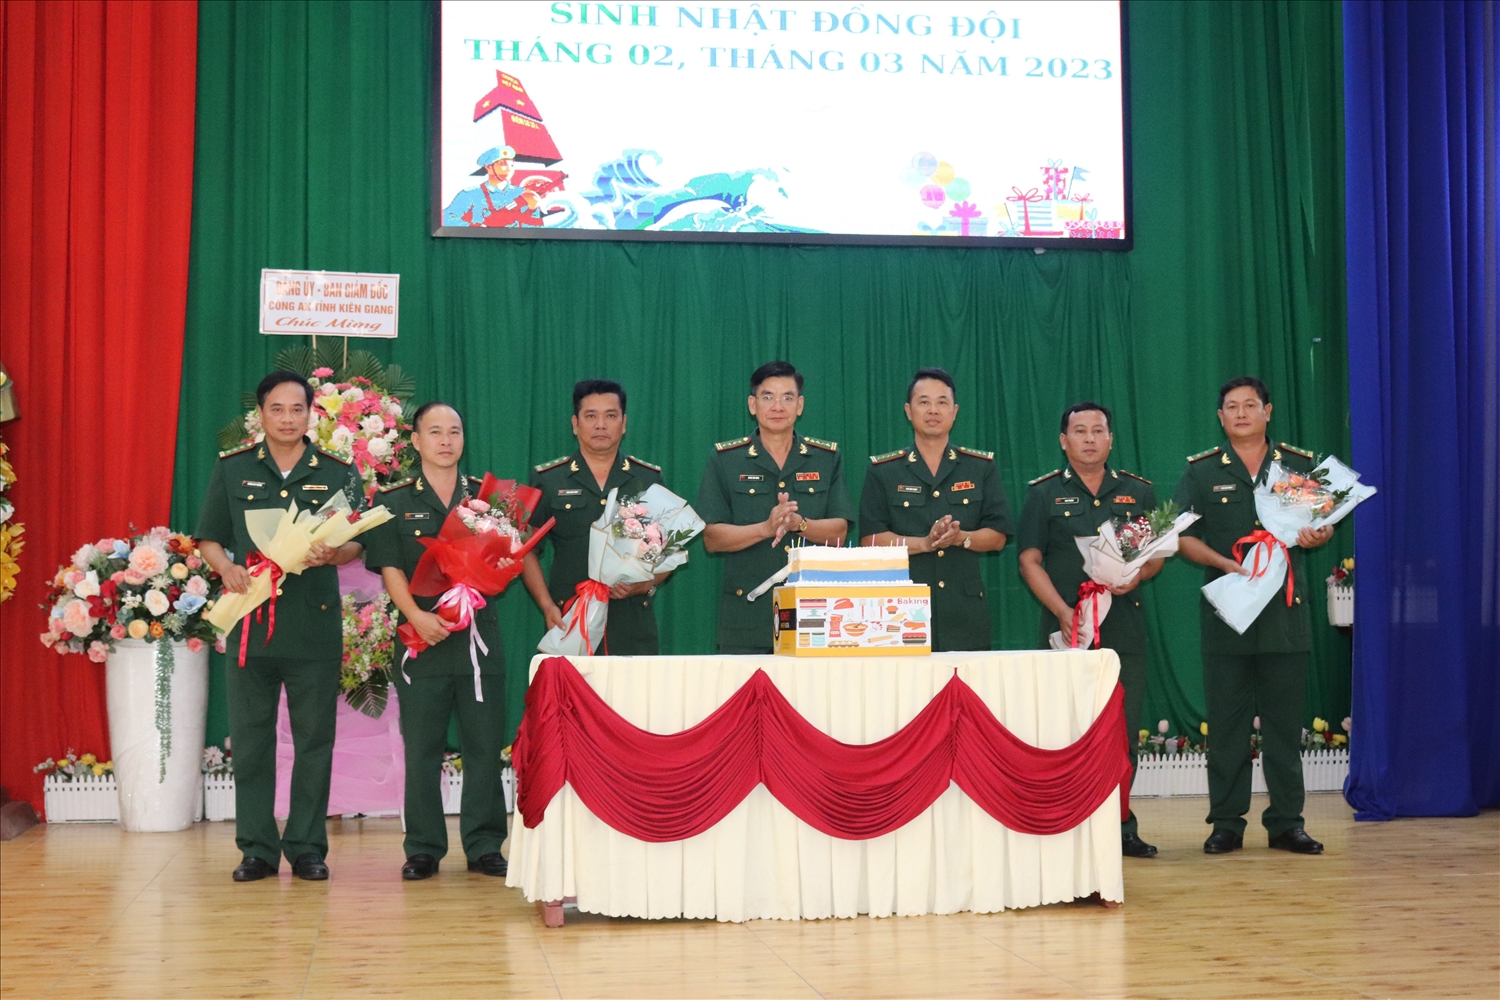  BĐBP Kiên Giang tổ chức sinh nhật đồng đội cho các cán bộ chiến sĩ